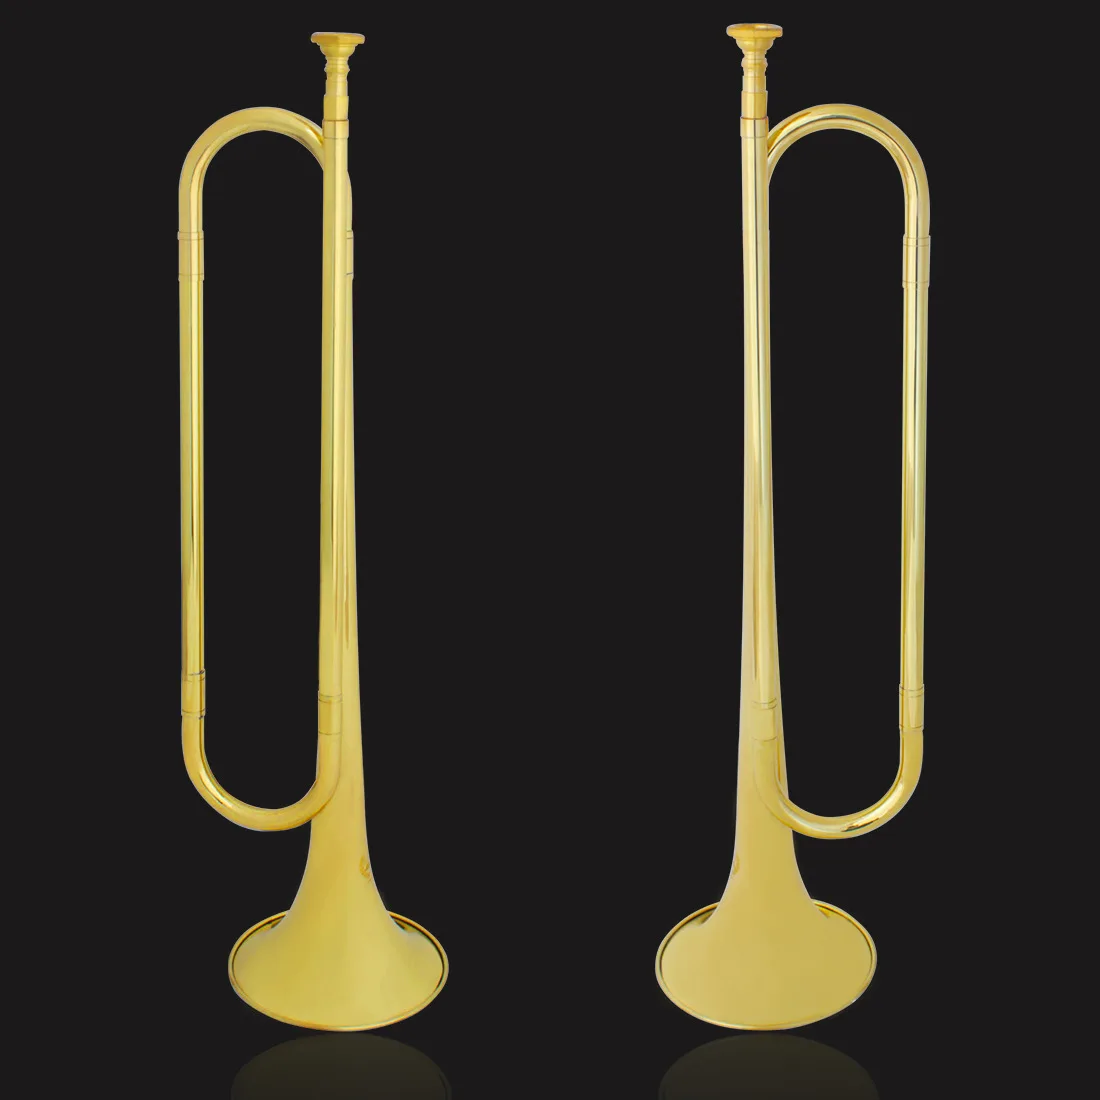 Прямая продажа с завода, Золотая и серебряная Латунная Труба, симфонический тромпет, ветровой инструмент для студентов